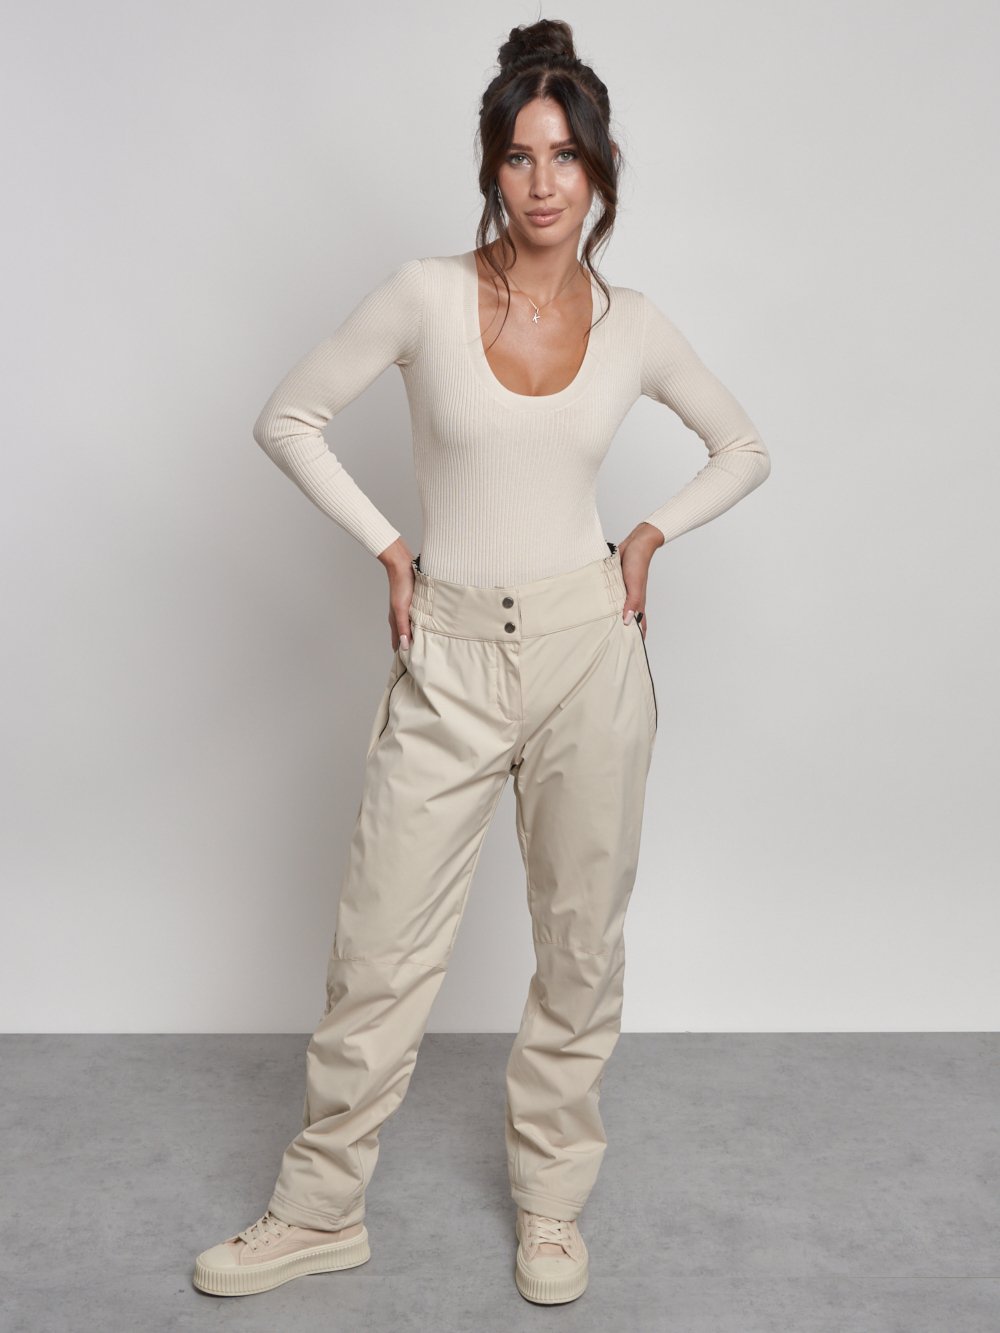 Купить брюки утепленные женские оптом от производителя недорого в Москве7141B